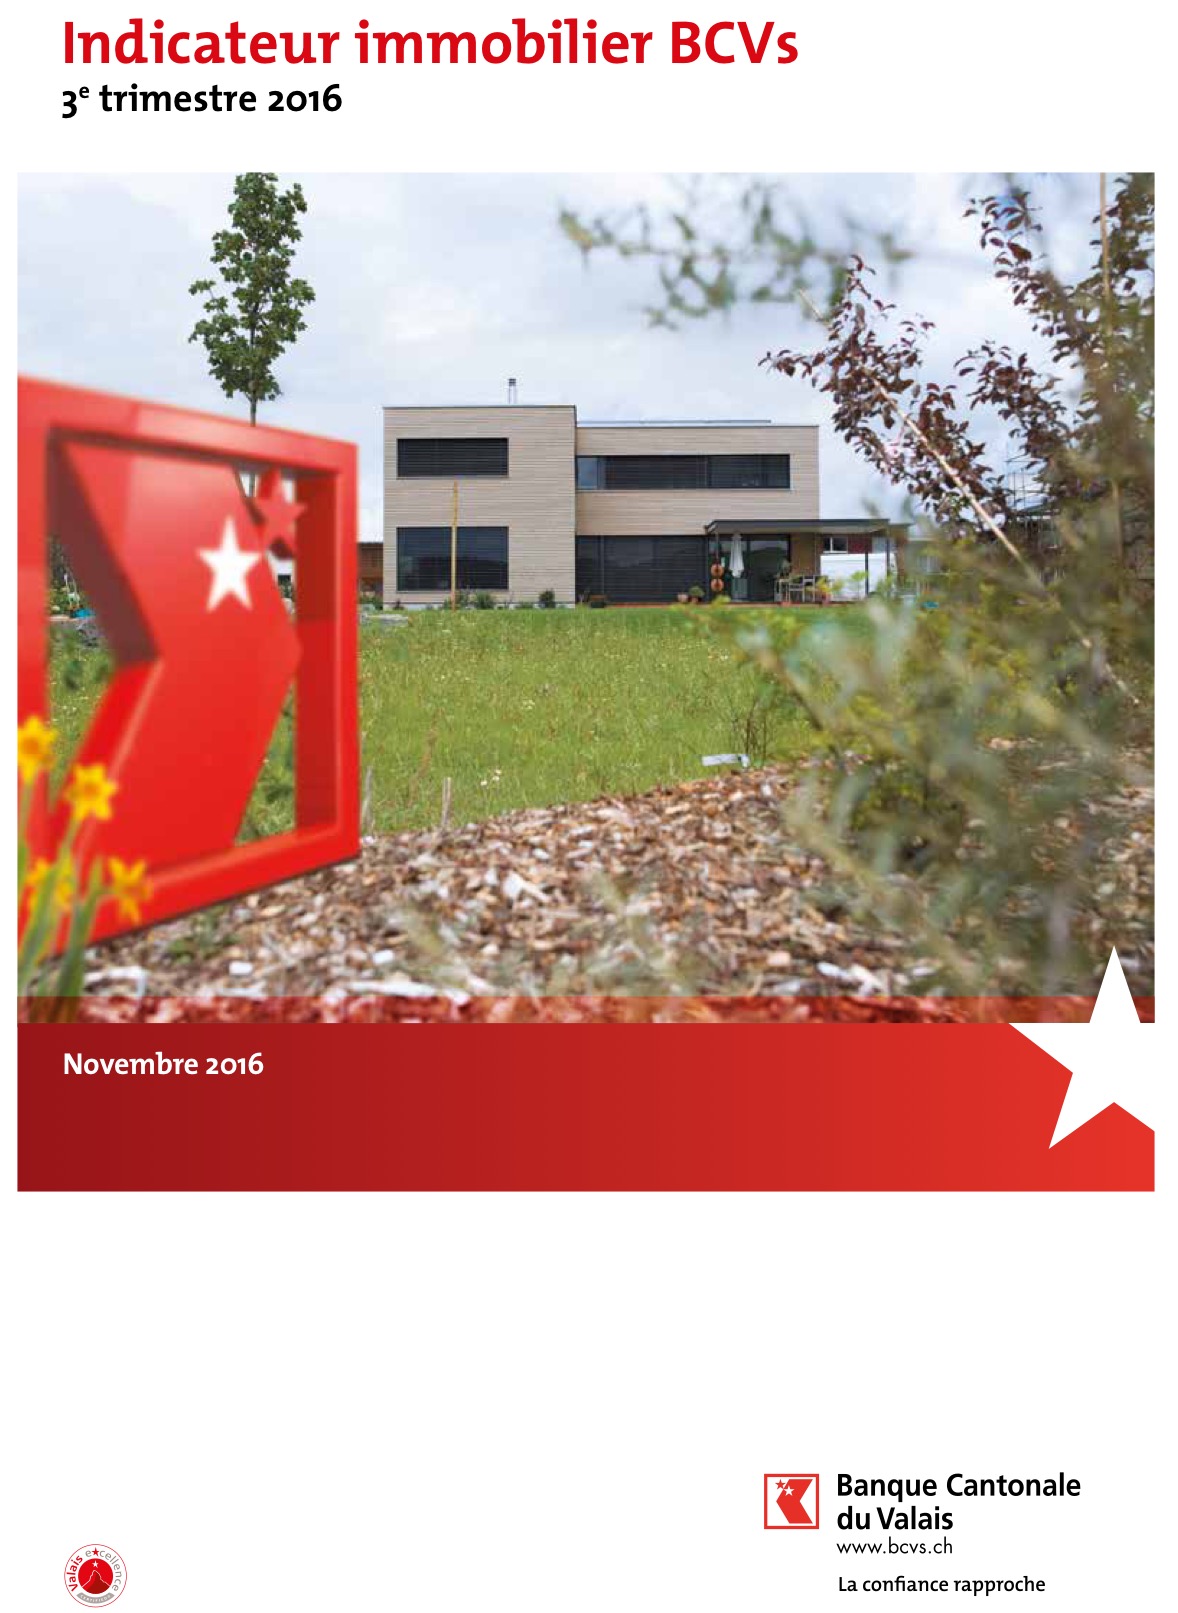 La Banque Cantonale du Valais publie son nouvel « Indicateur immobilier BCVs »